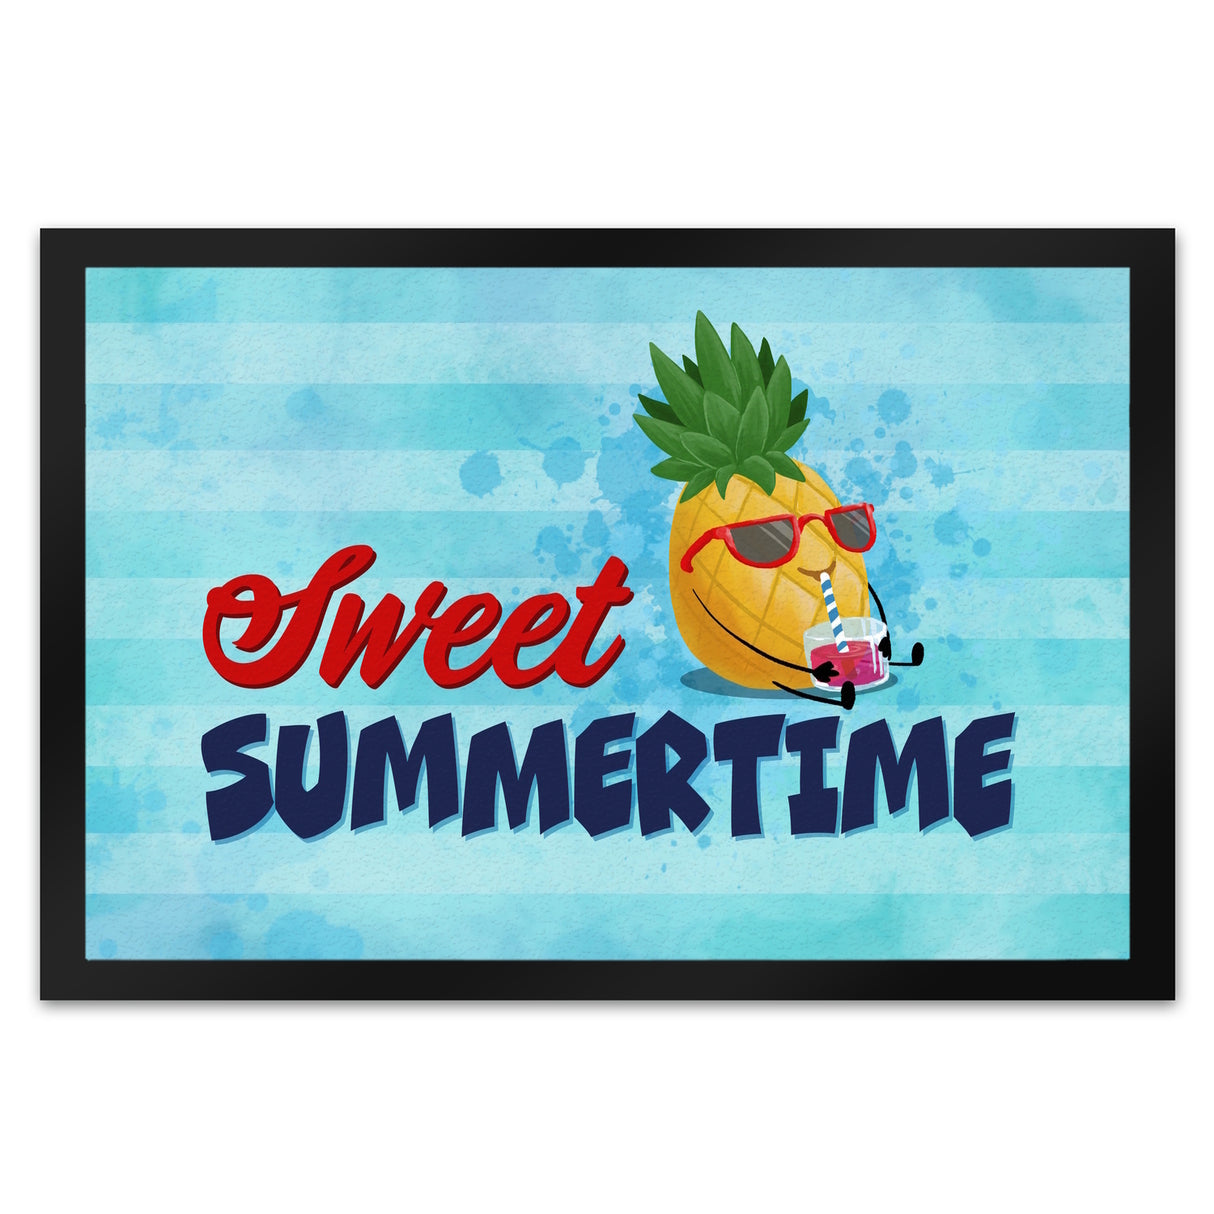 Sweet summertime Fußmatte mit süßer Ananas